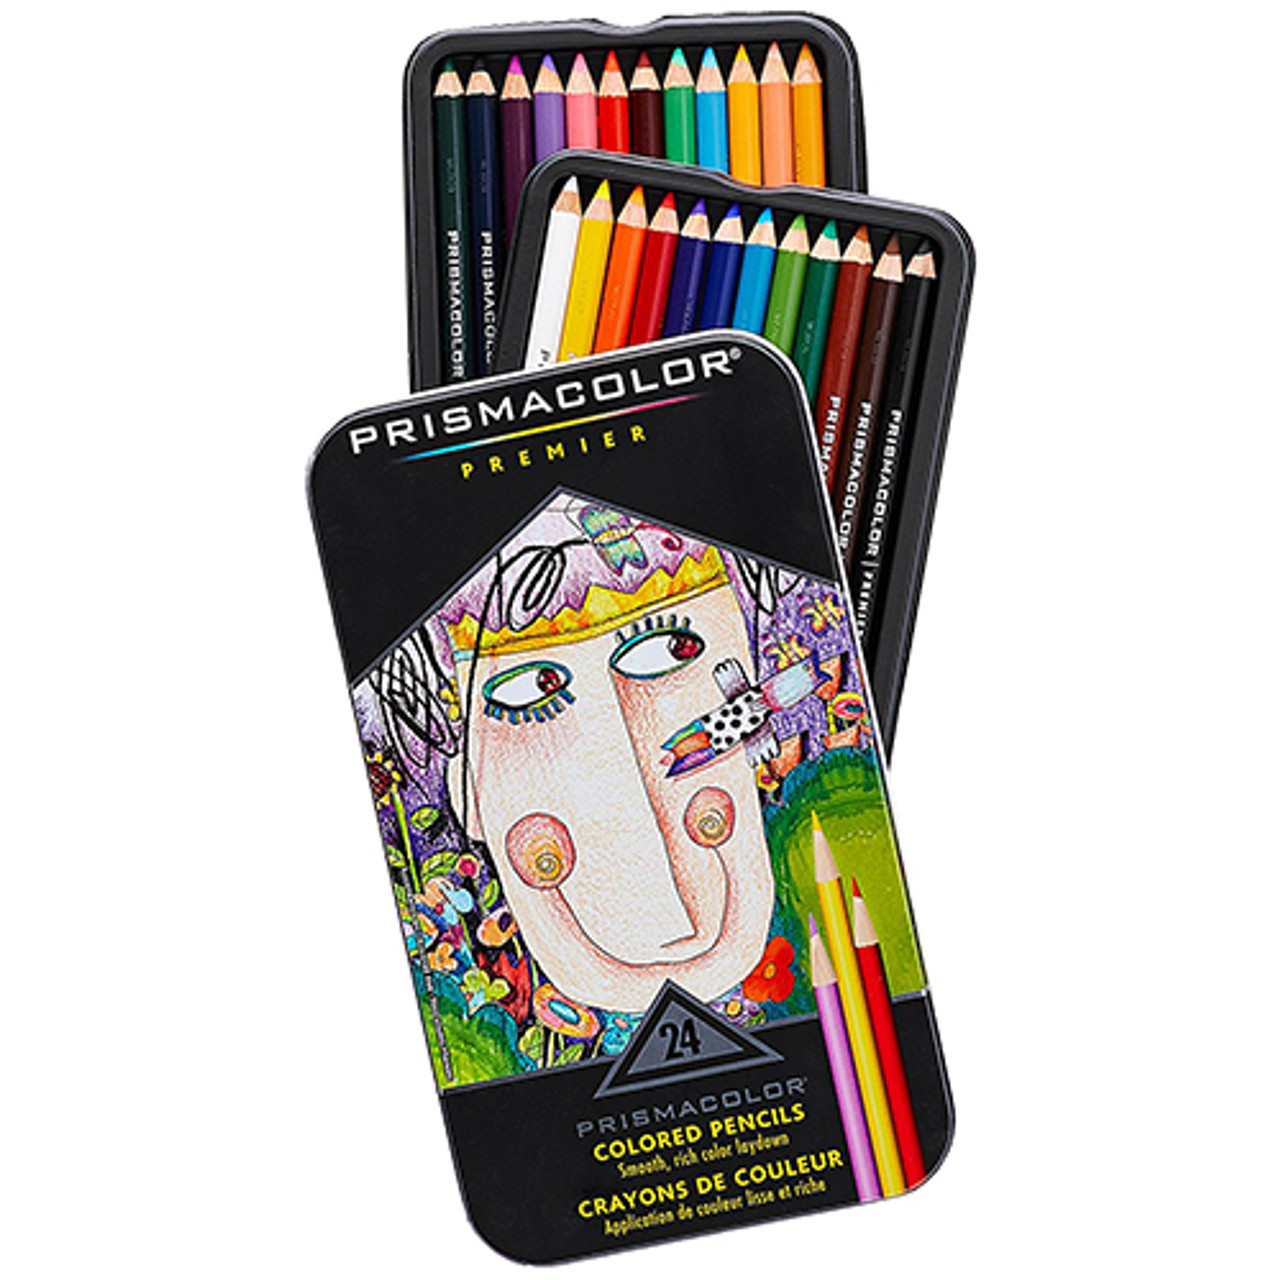 Prismacolor Premier Colored Pencils, 24-Set - Midwest Technology Products